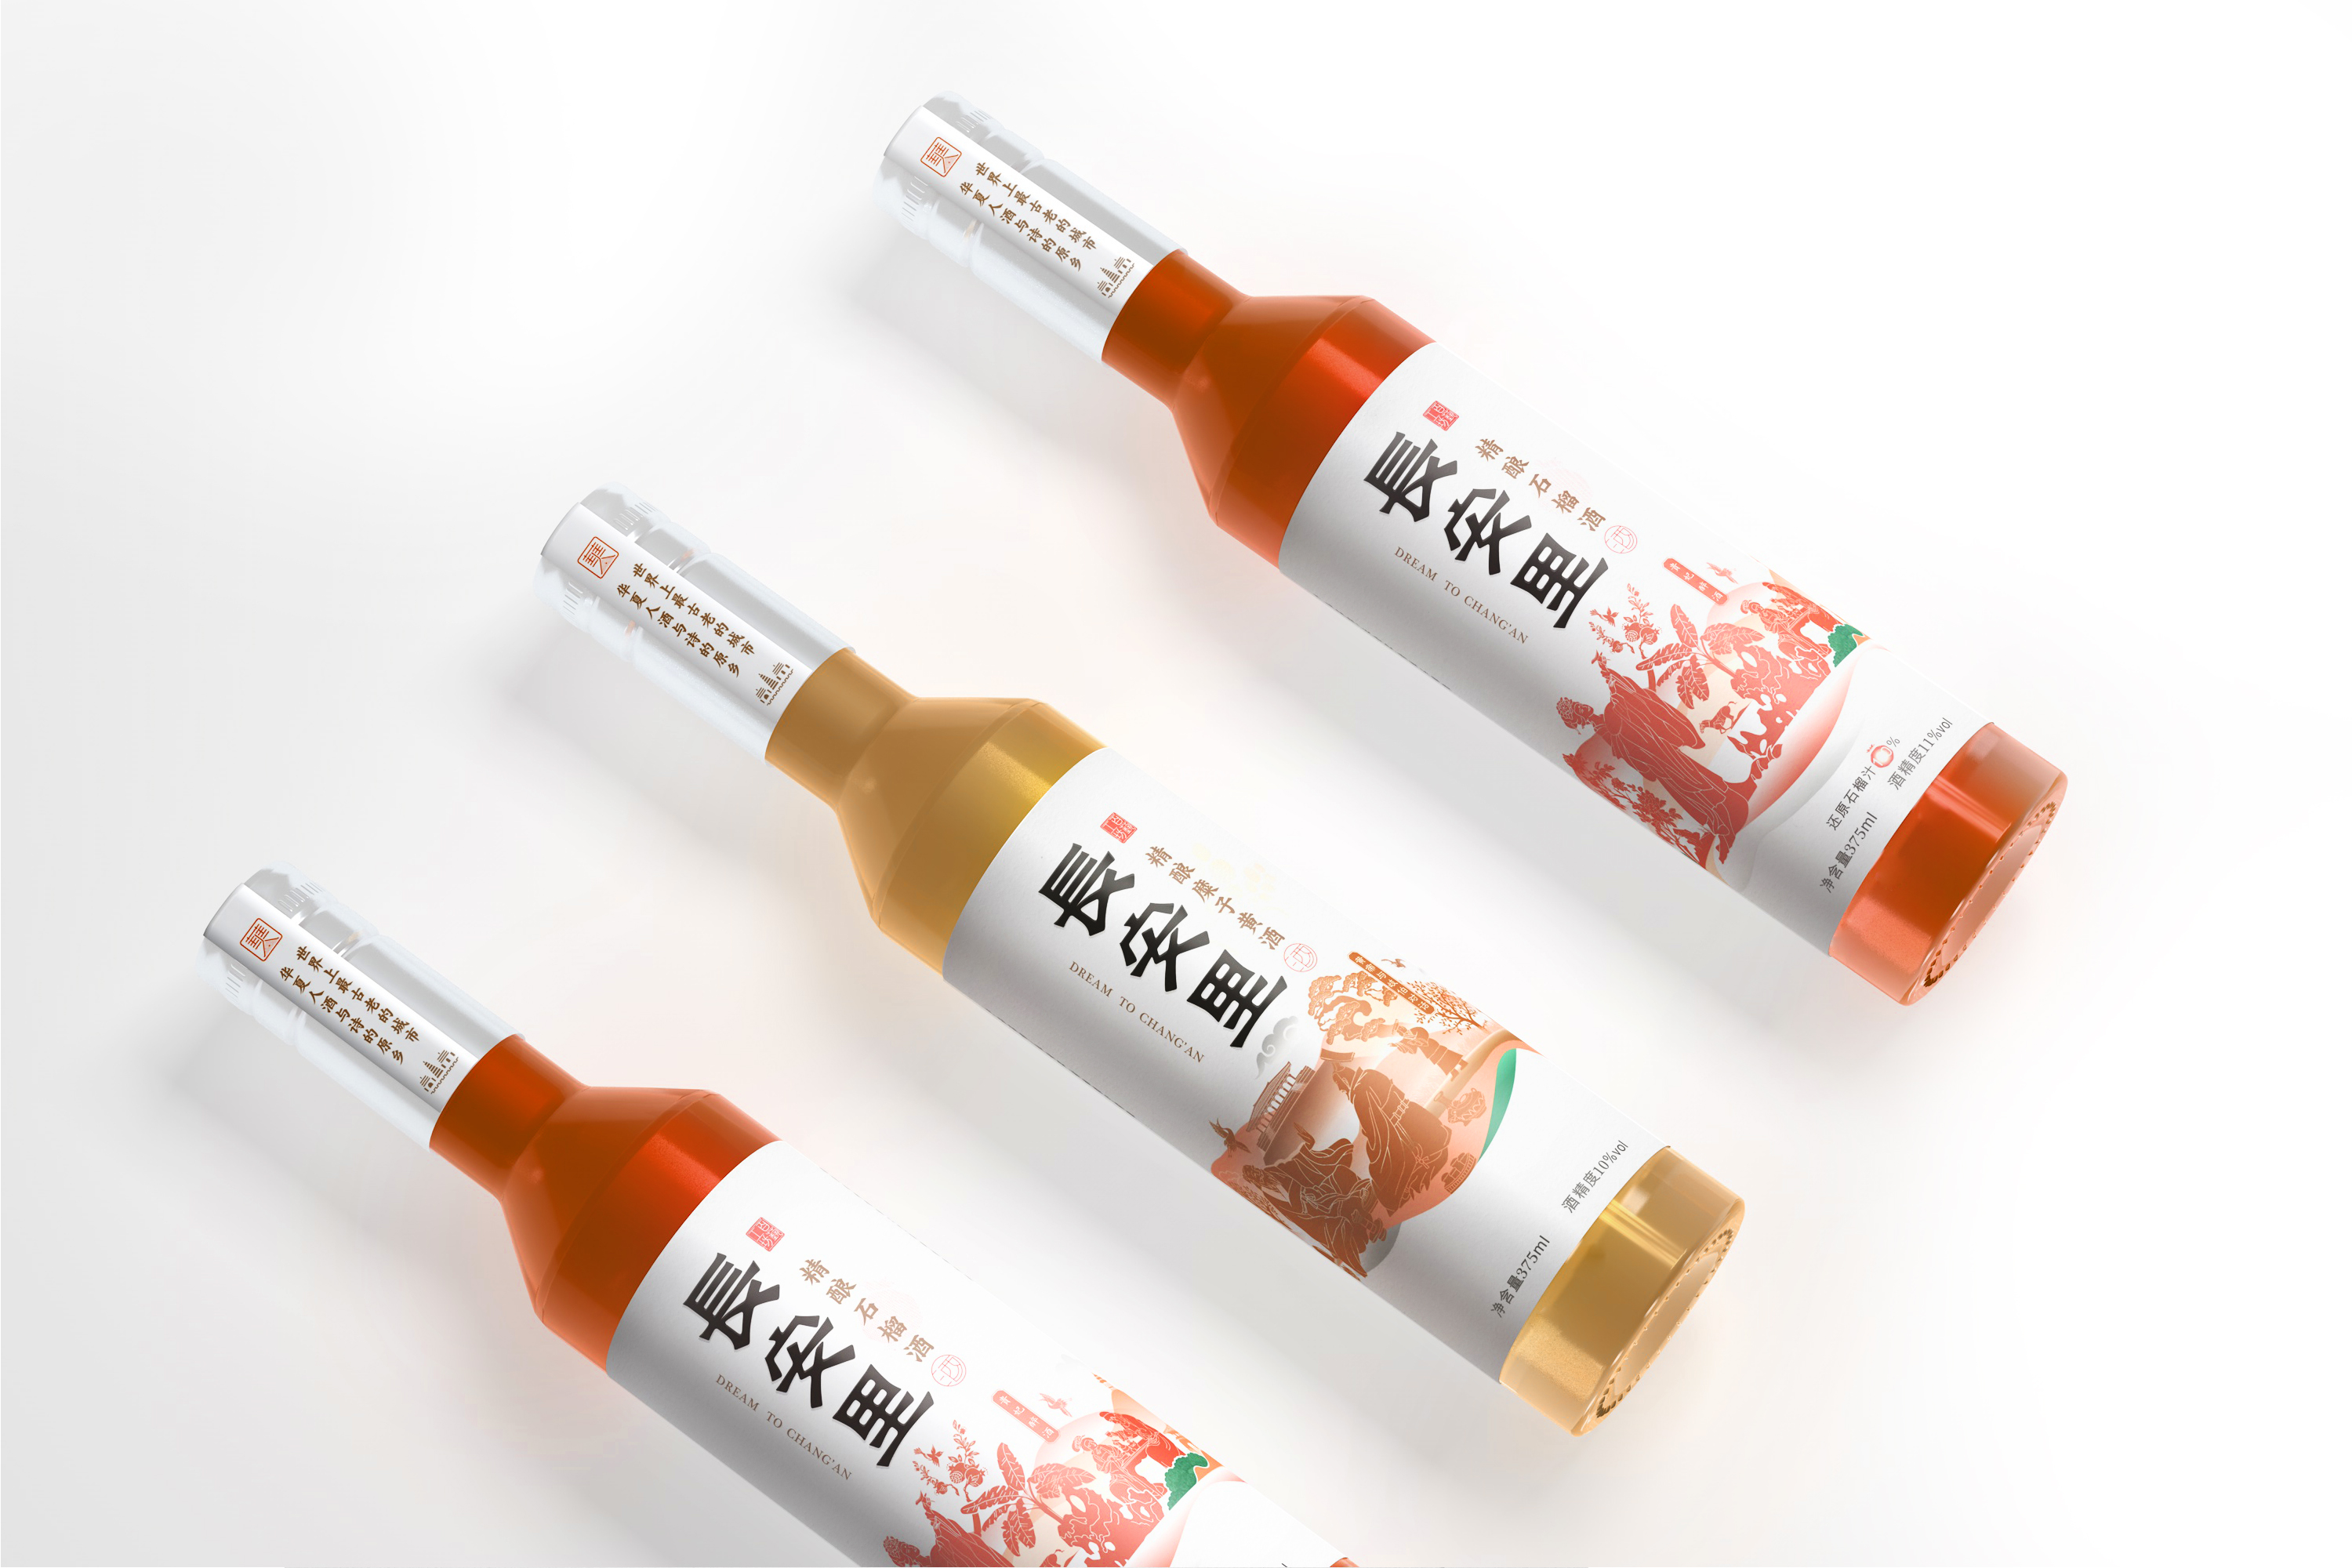 旅游文化产品石榴酒与糜子黄酒瓶型标签包装设计02.jpg